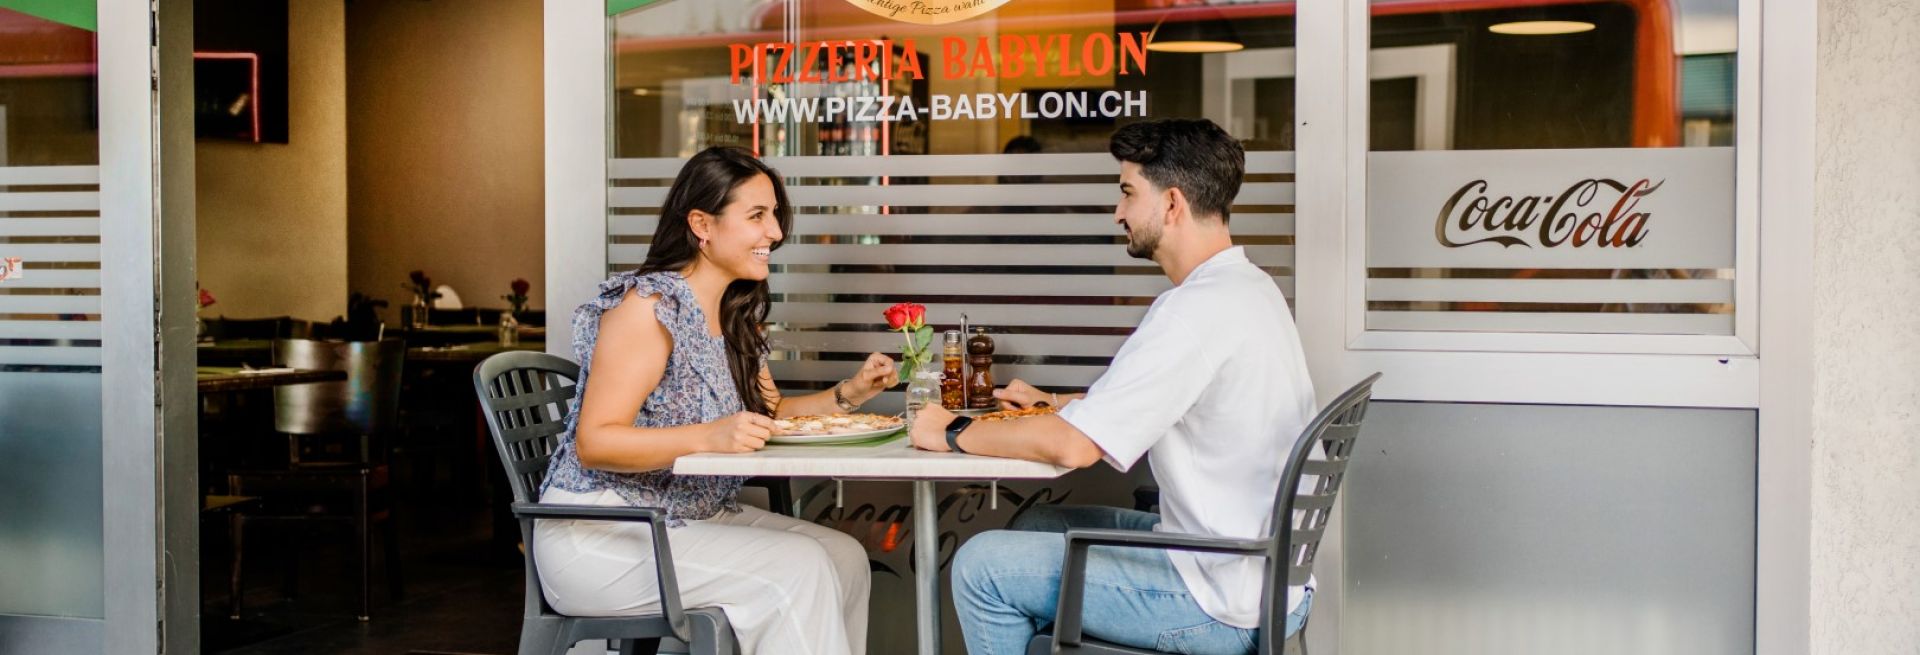 pizza-babylon-Oeffnungszeiten